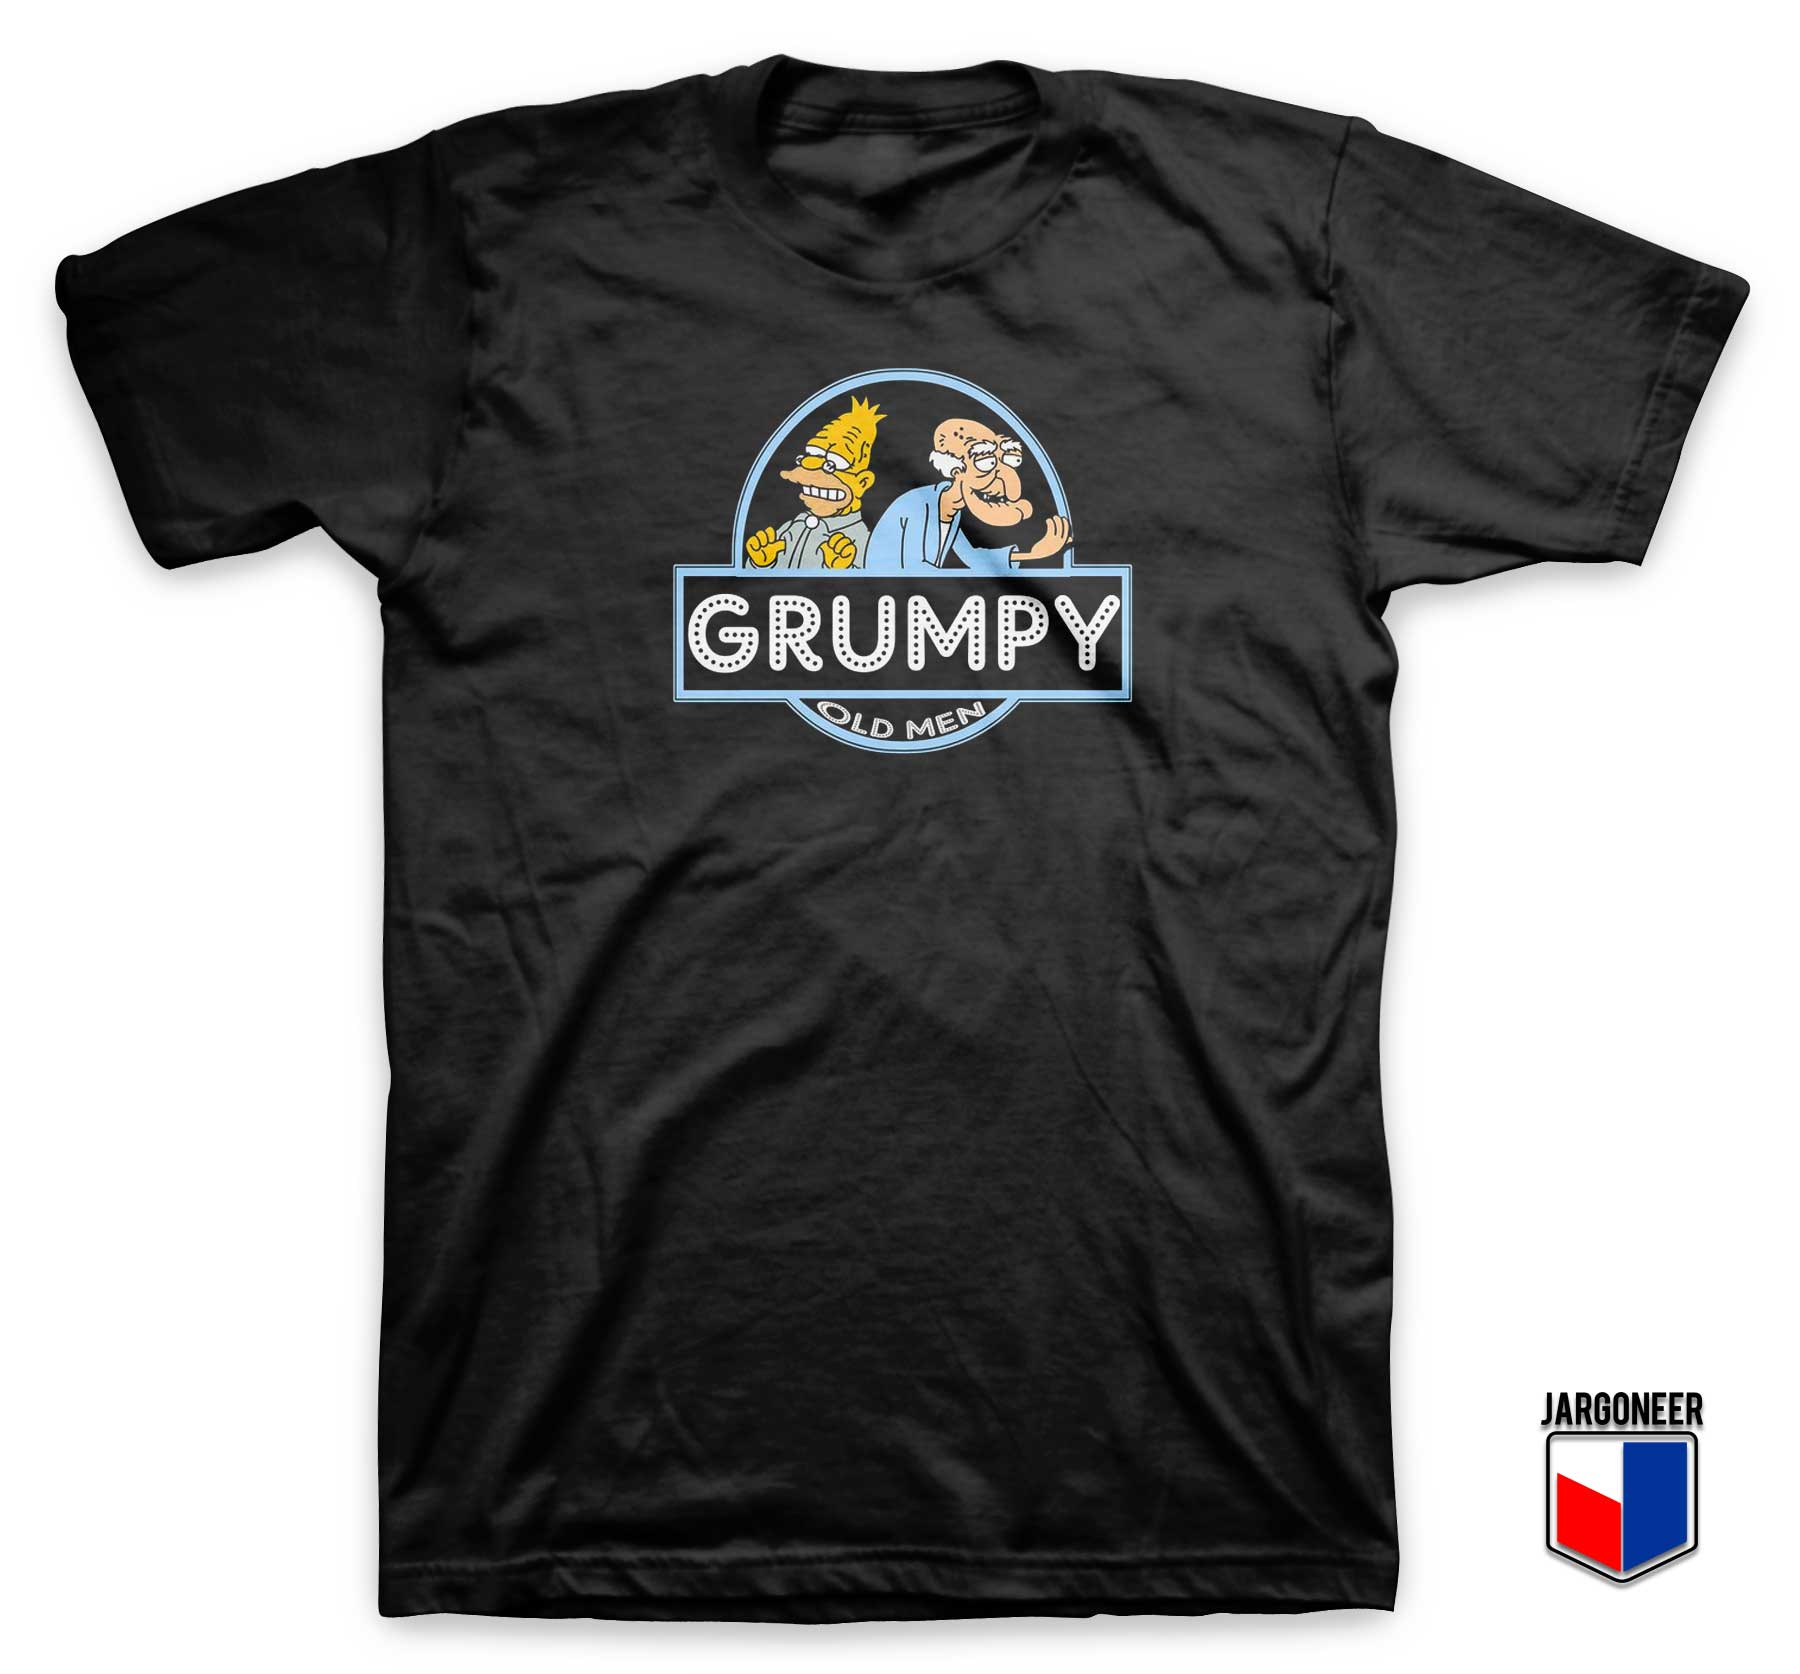 Grumpy Old Men T Shirt - Shop Unique Graphic Cool Shirt Designs